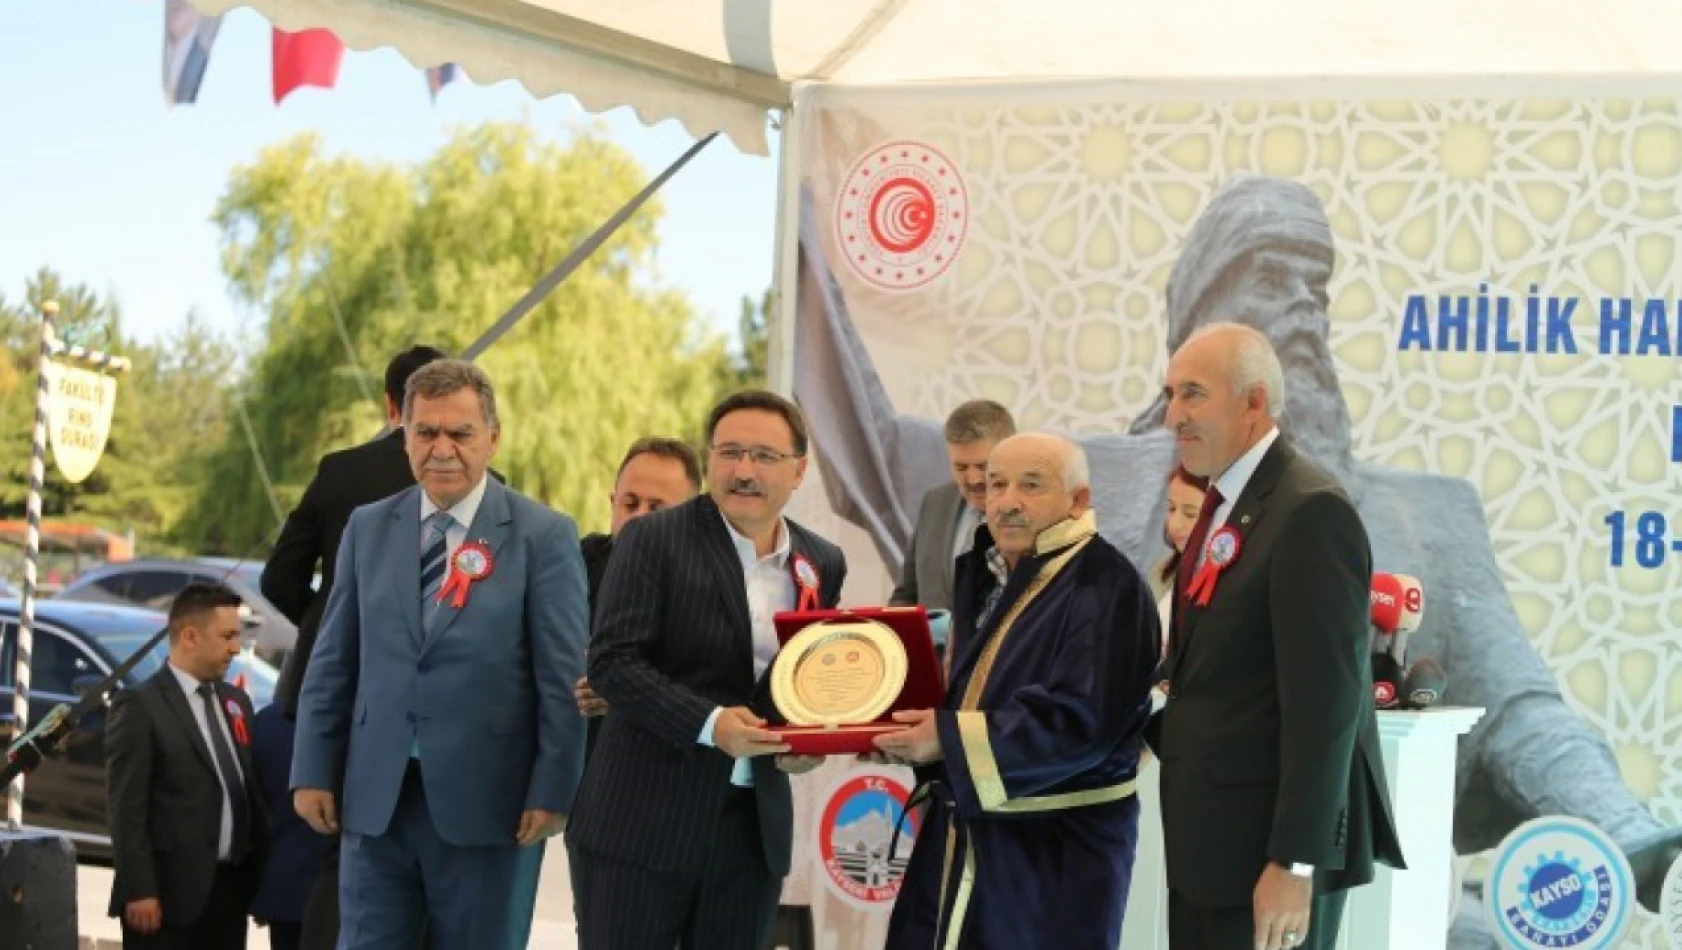 Kayseri'de Ahilik Haftası kutlamaları başladı